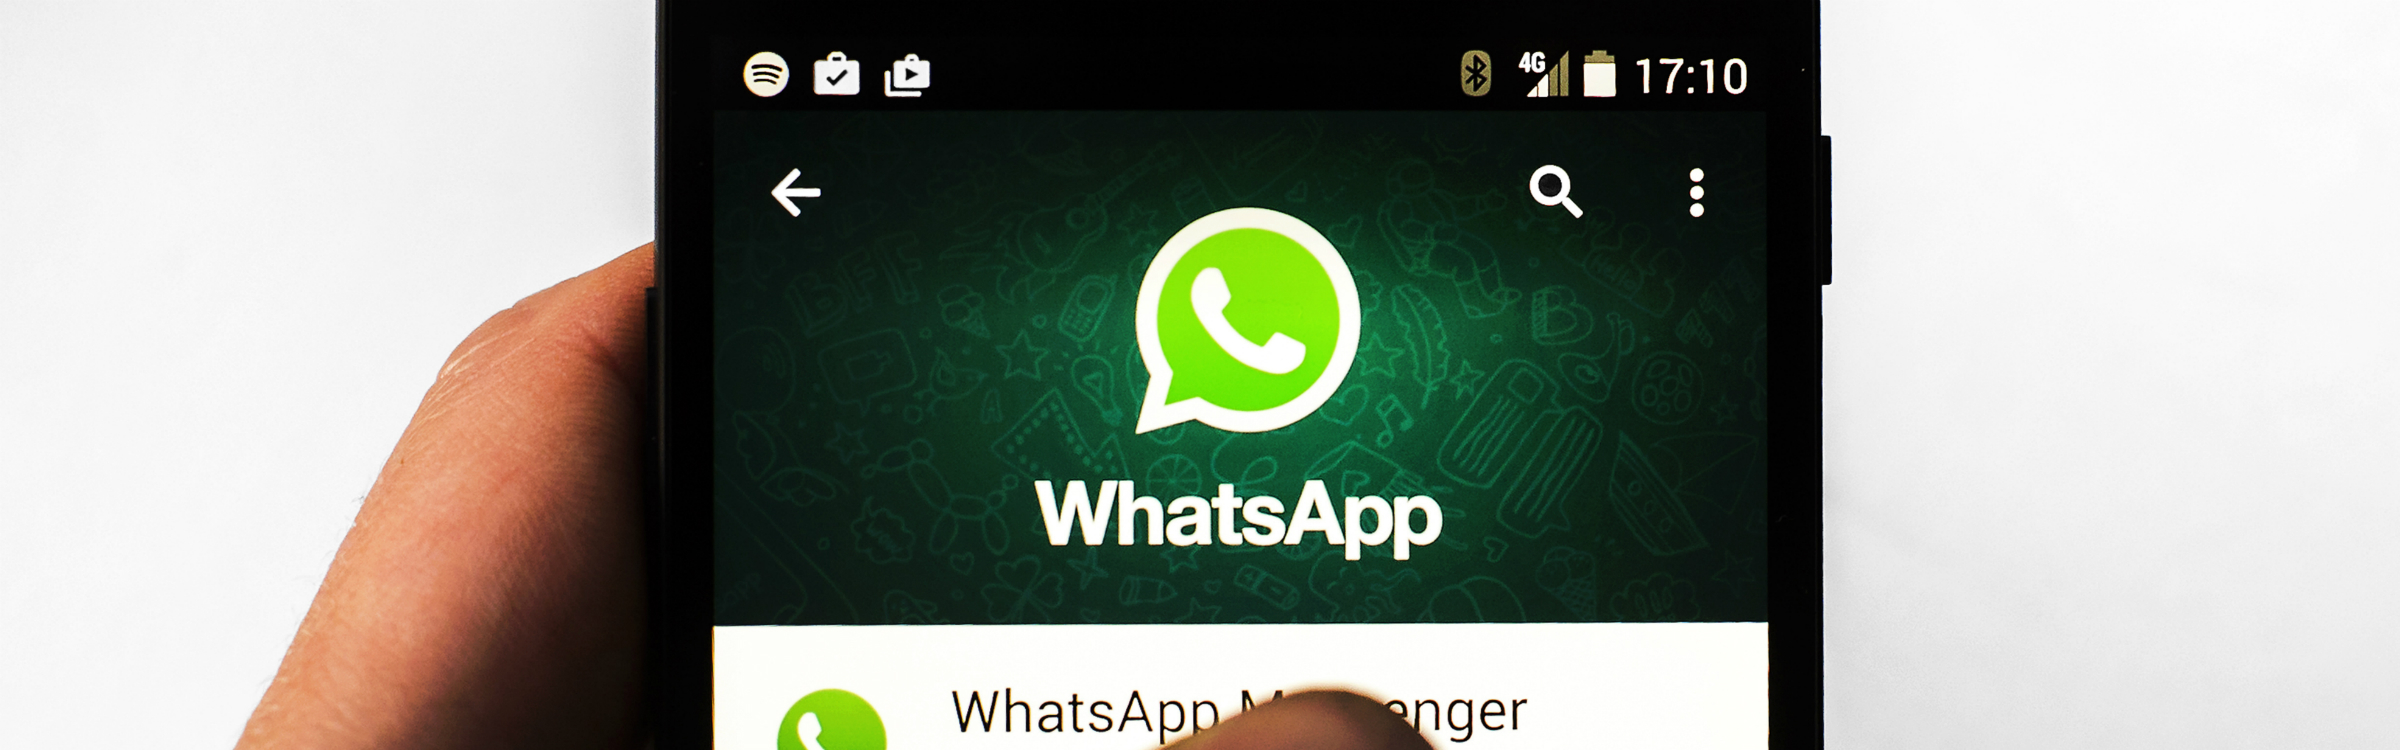 Whatsappp header 